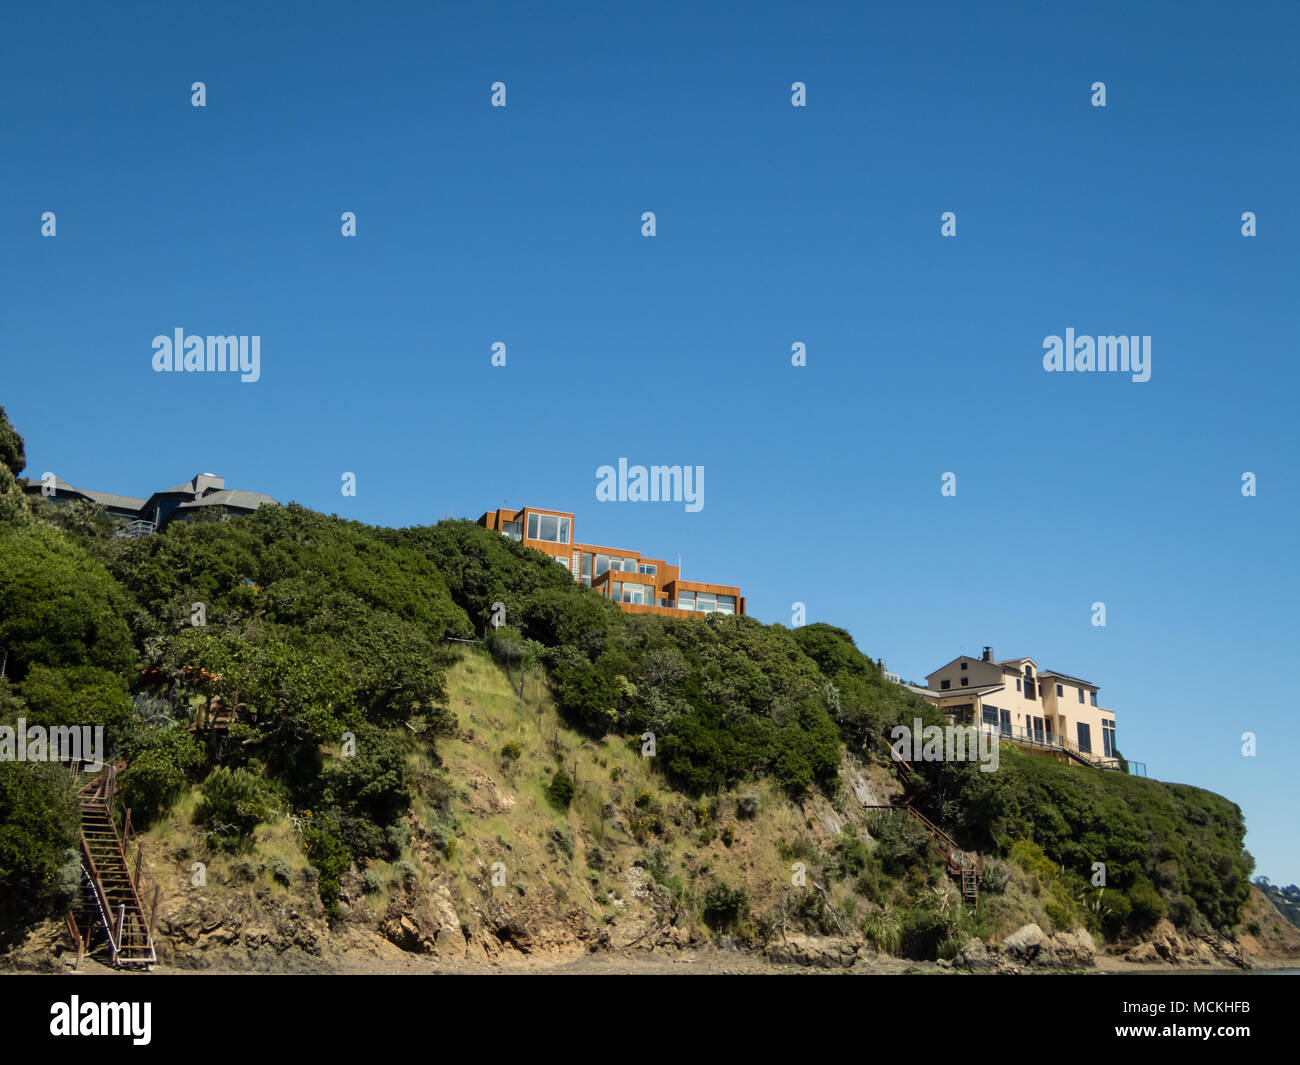 Maisons aux toits de tuiles rouges sur le bord d'une falaise Marin County, CA Banque D'Images